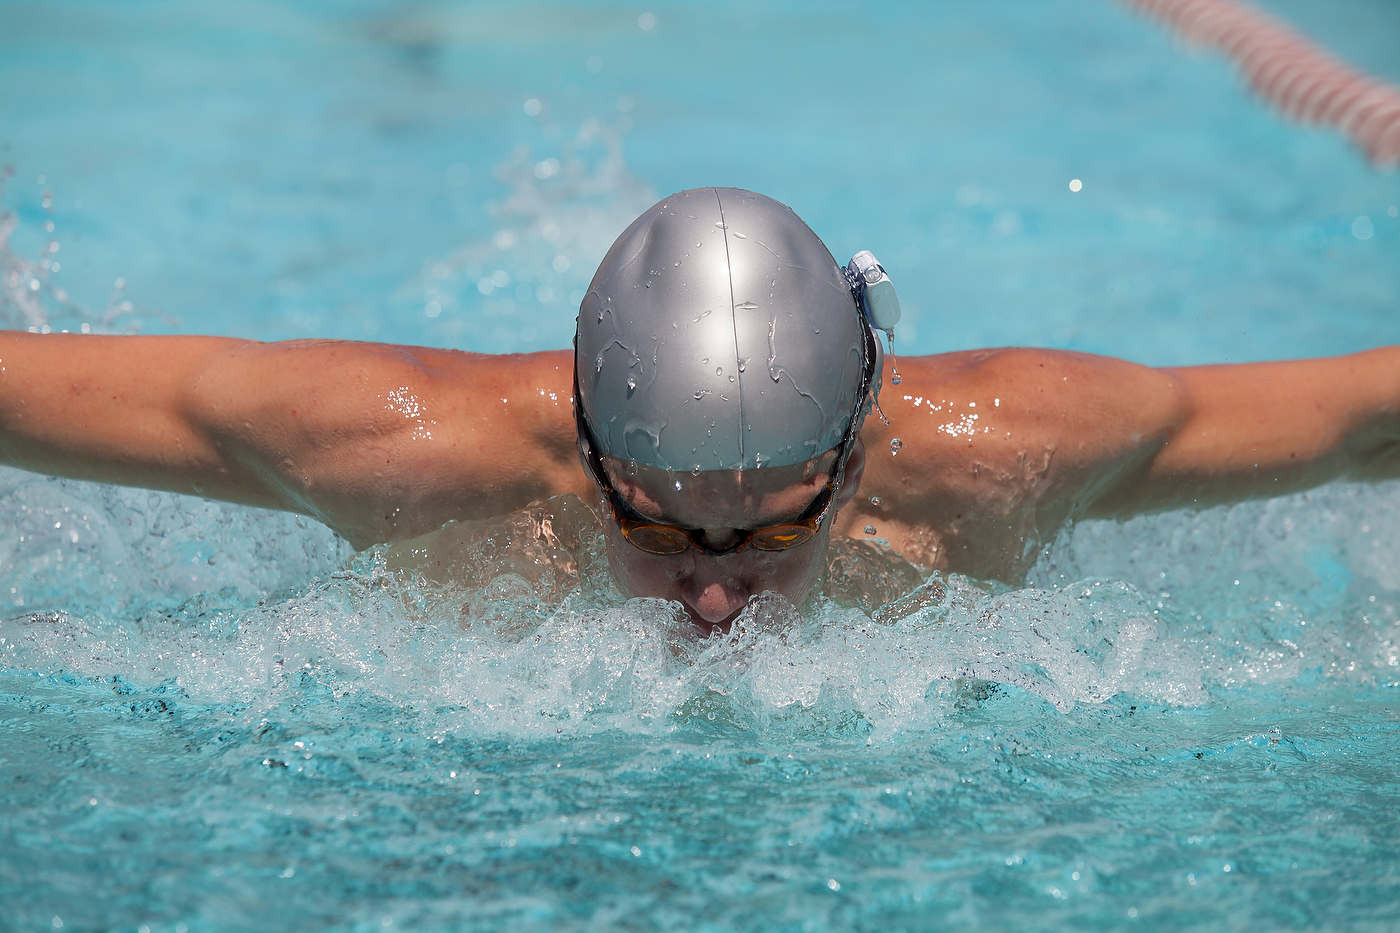 Swimmer, for Advanced Bionics